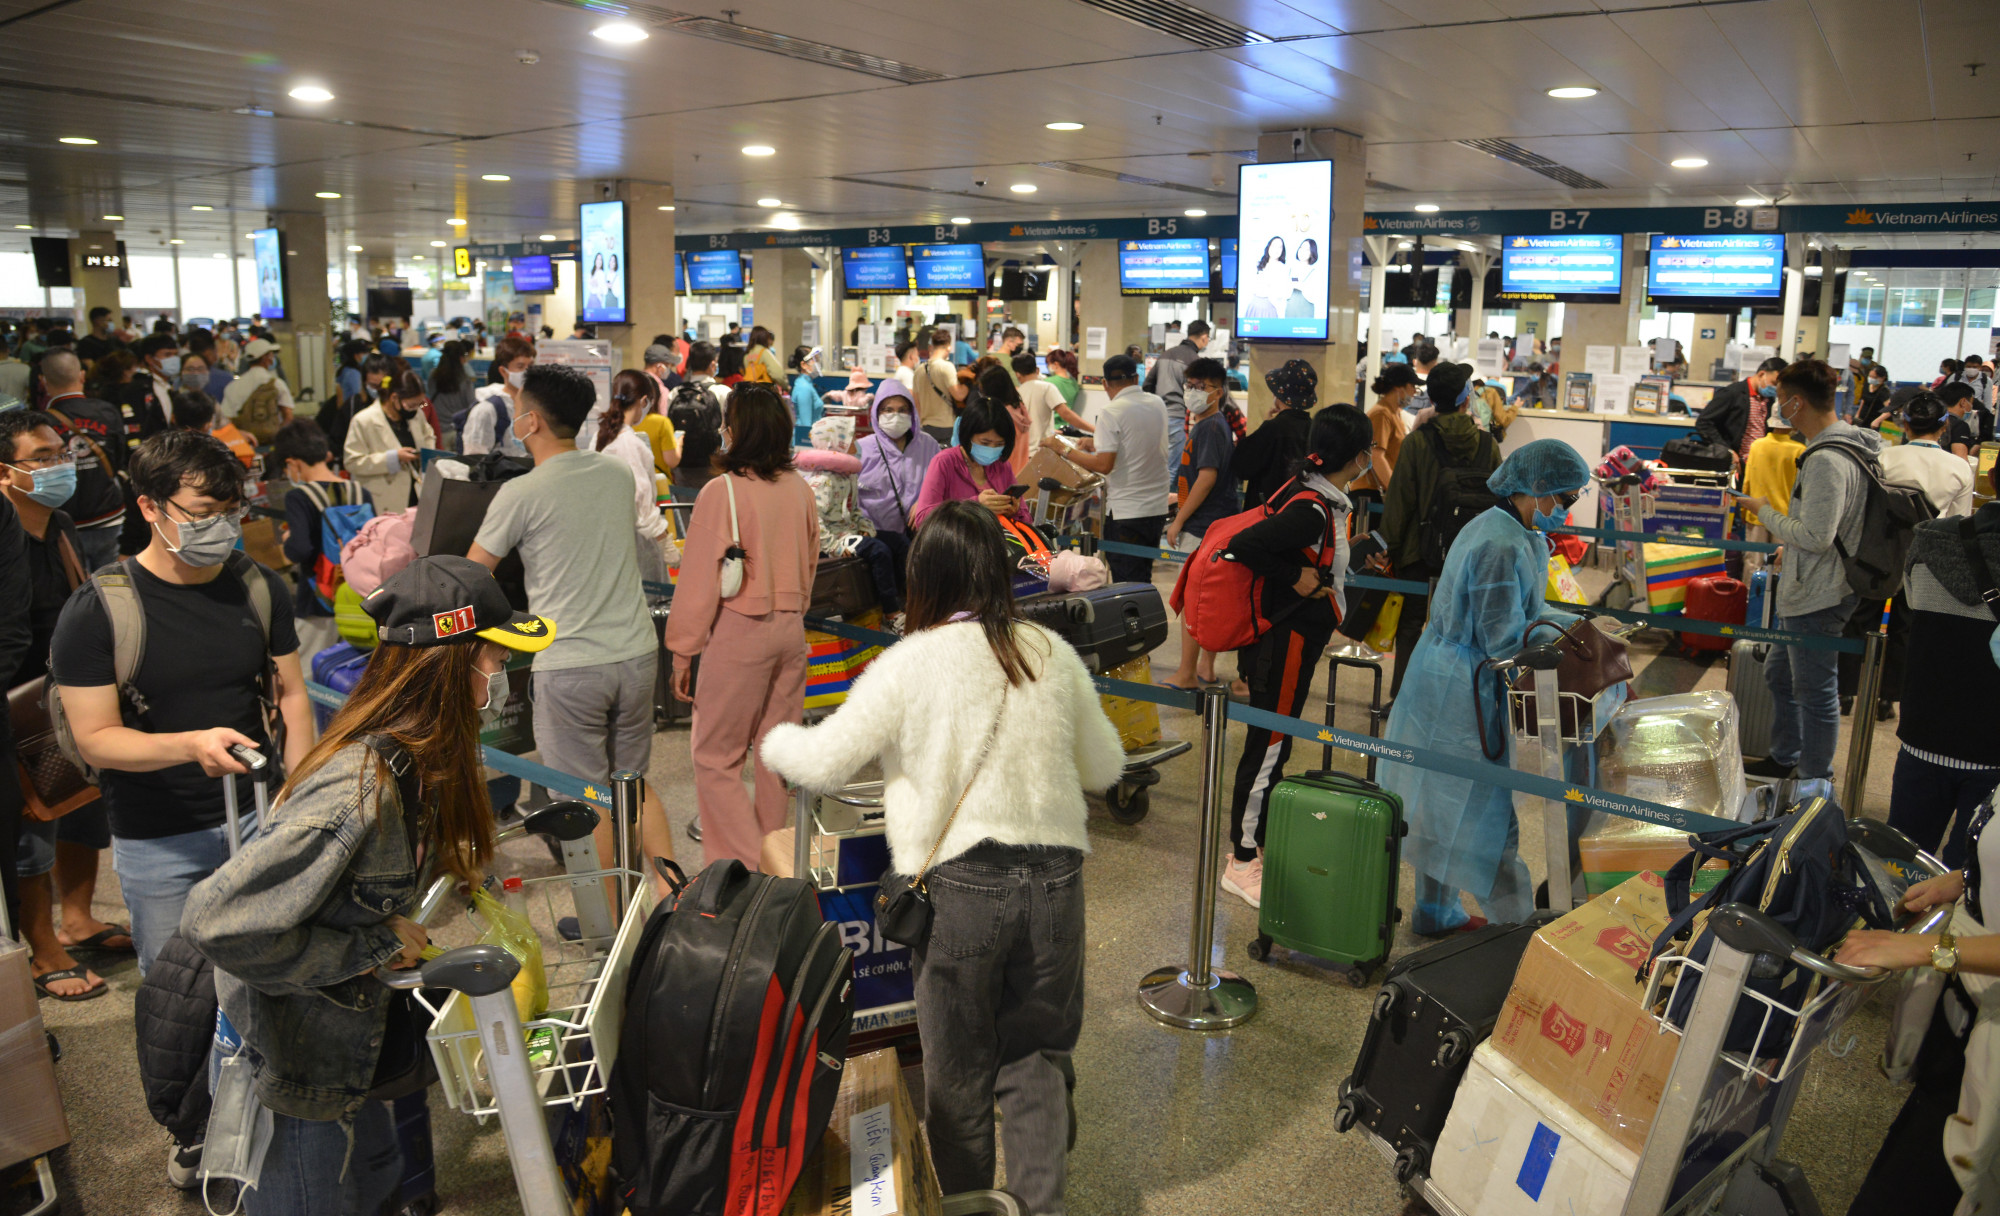 Sau khi hoàn thành, nhà ga T3 được kỳ vọng sẽ giải quyết được tình trạng đông đúc, quá tải của sân bay Tân Sơn Nhất. Ảnh: Nhật Linh.